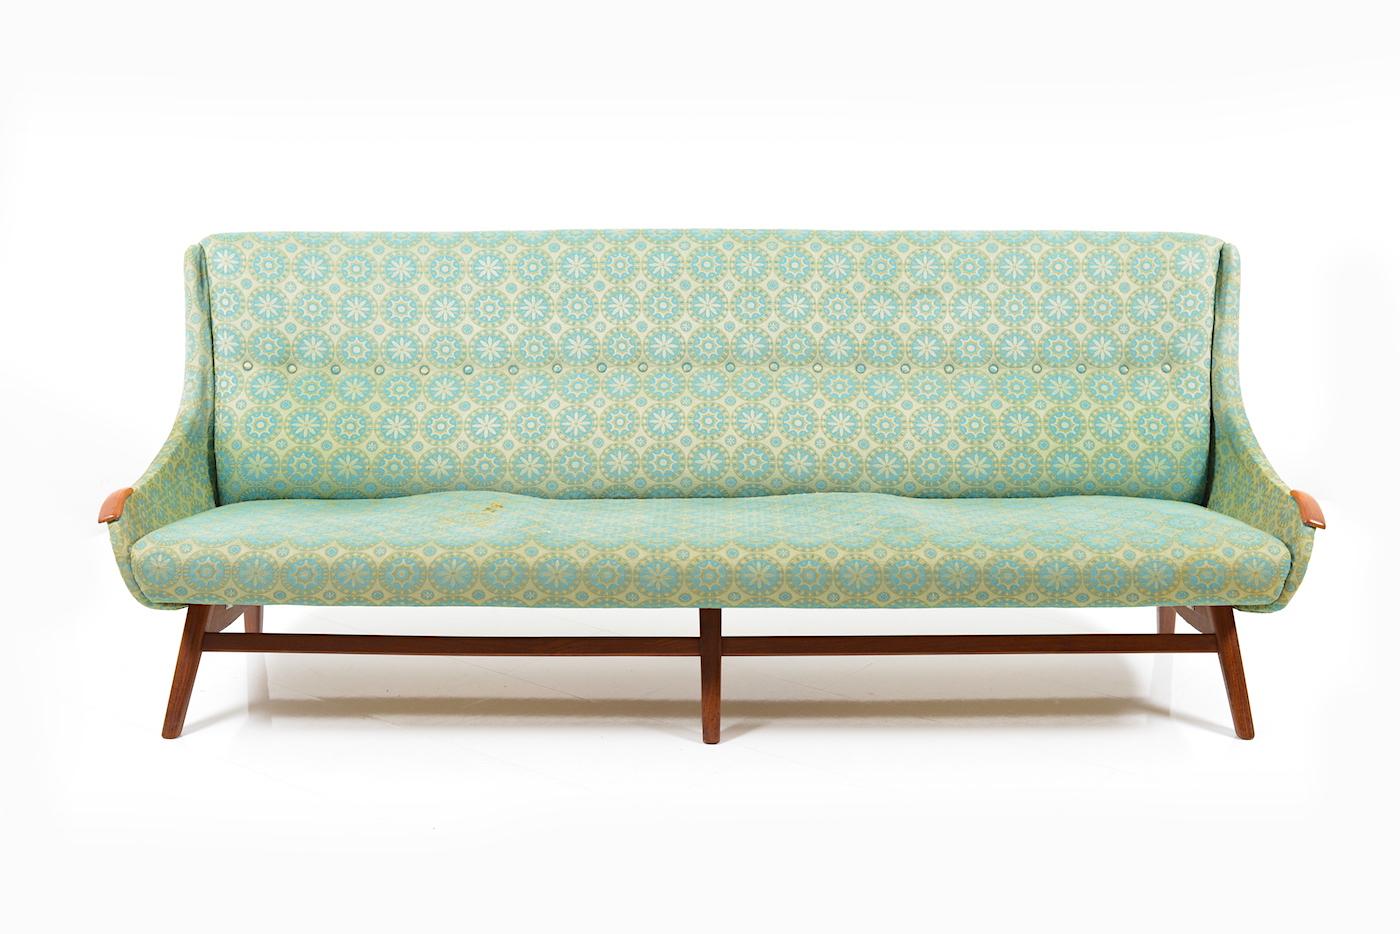 Einzigartiges viersitziges Sofa des dänischen Designers und Möbelherstellers Svend Skipper. Dieser Prototyp ist nie in Serie gegangen und stammt aus dem Privathaus des Designers. Entworfen und hergestellt in den frühen 1950er Jahren. Rahmen und